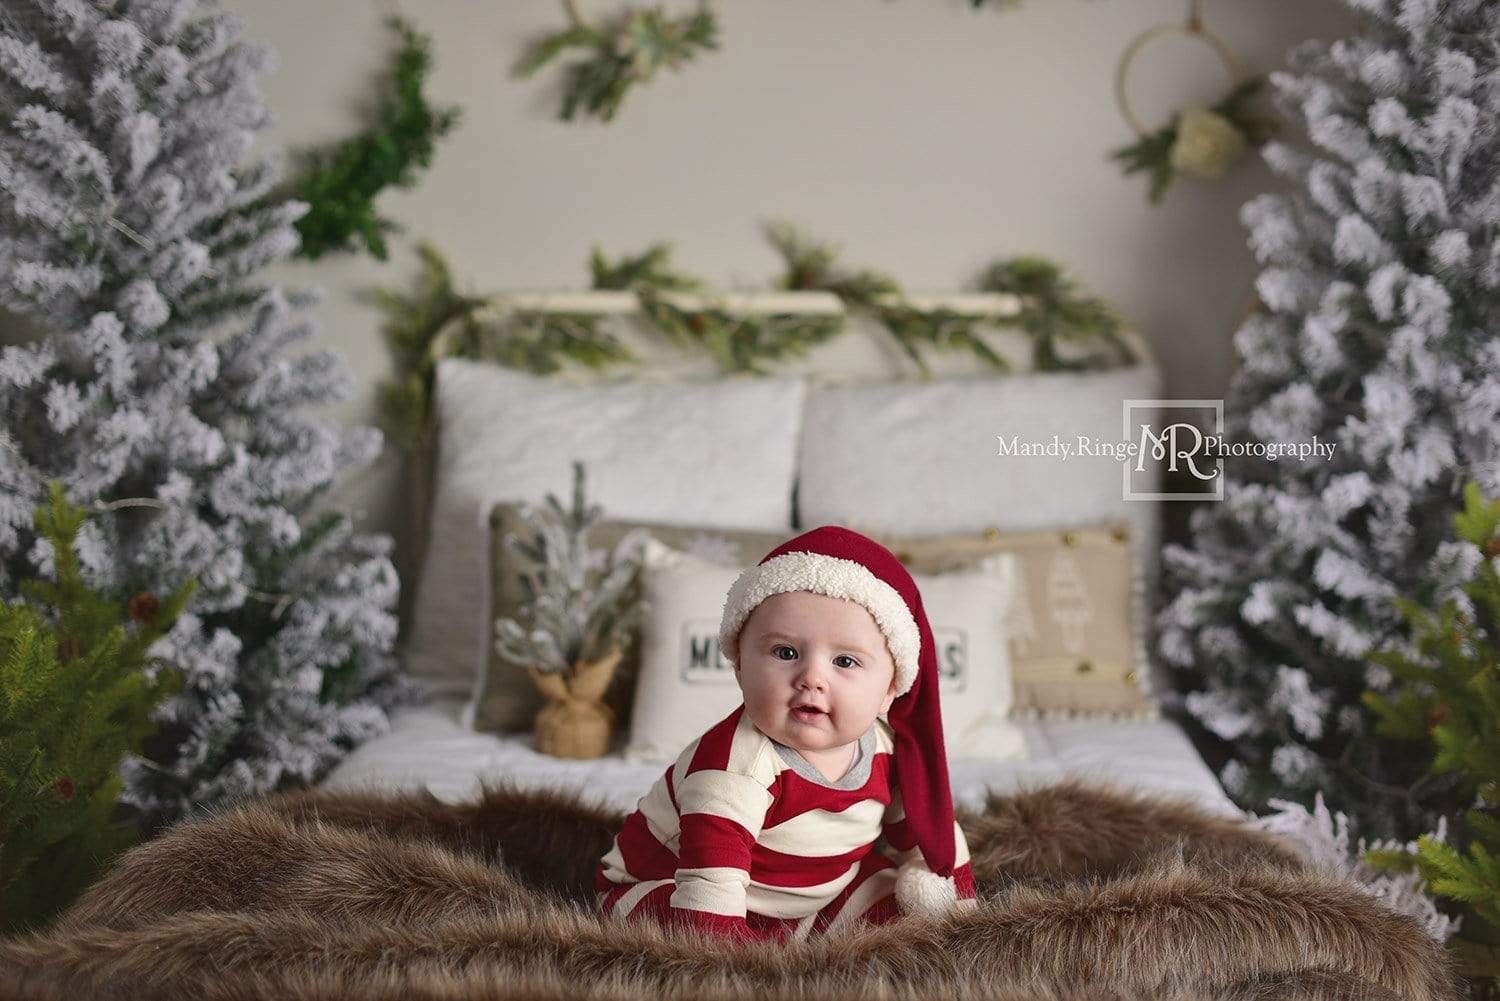 Kate クリスマスのヘッドボードの木の写真の背景 によって設計されたMandy Ringe Photography